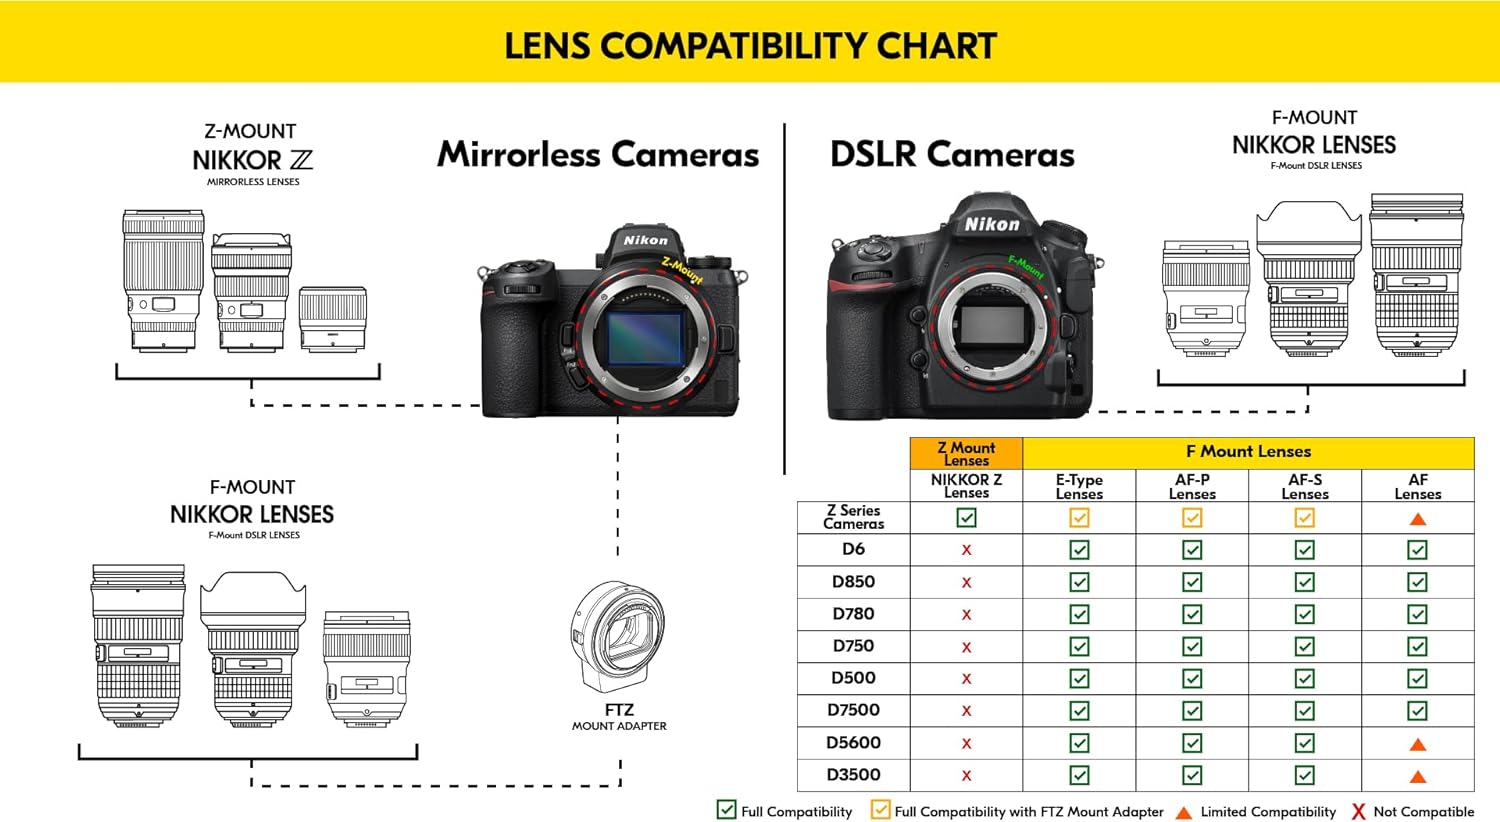 Nikon AF S NIKKOR 85mm f/1.8G Fixed Lens: A Stunning Lens for Captivating Photography